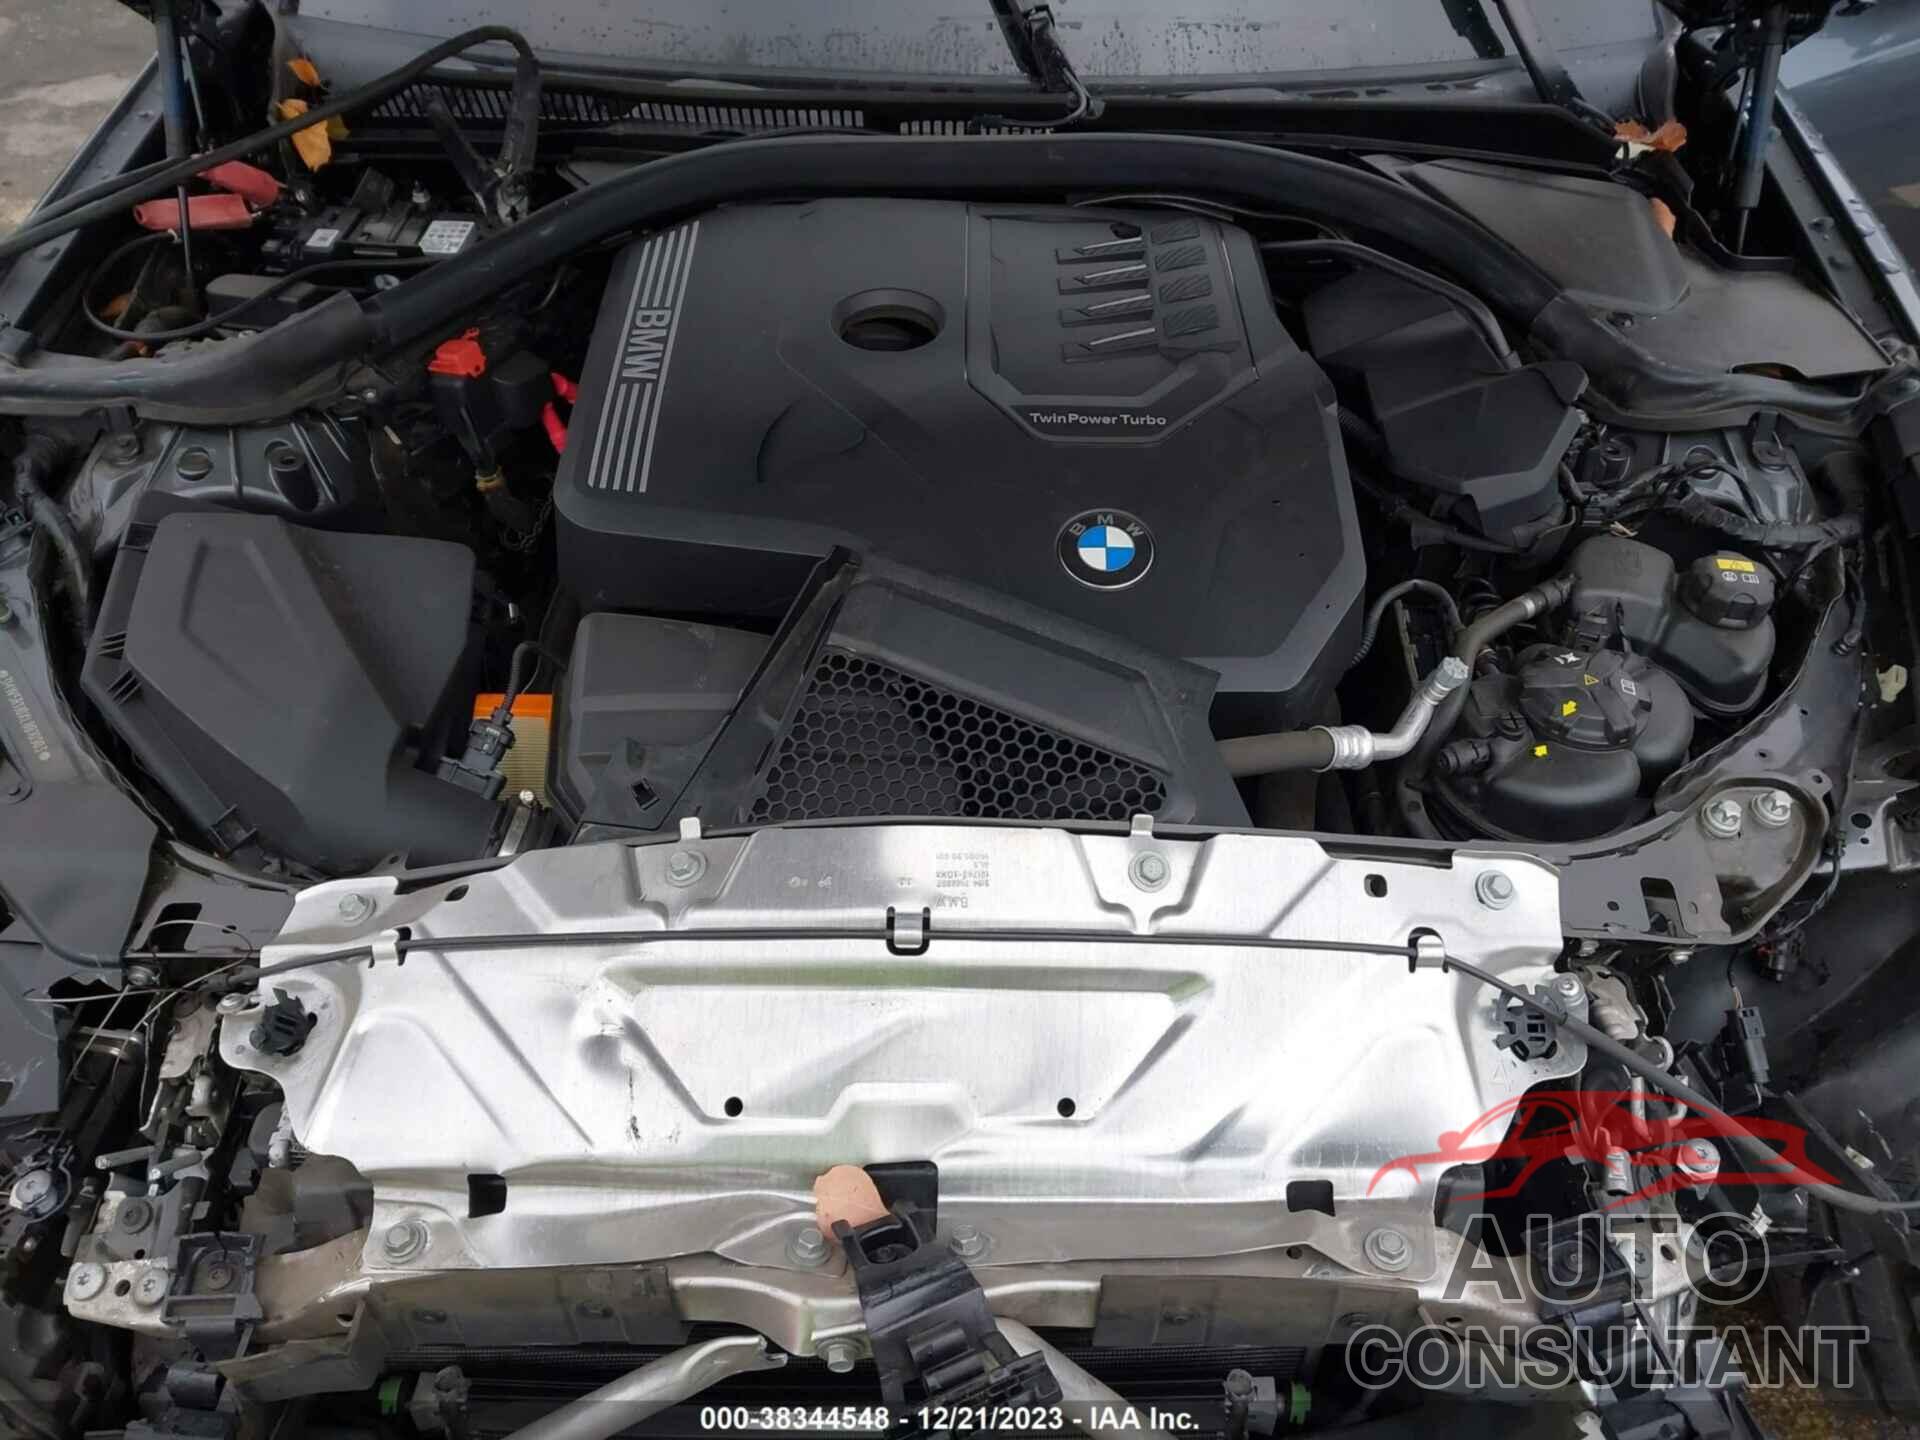 BMW 330I 2020 - 3MW5R1J0XL8B10903